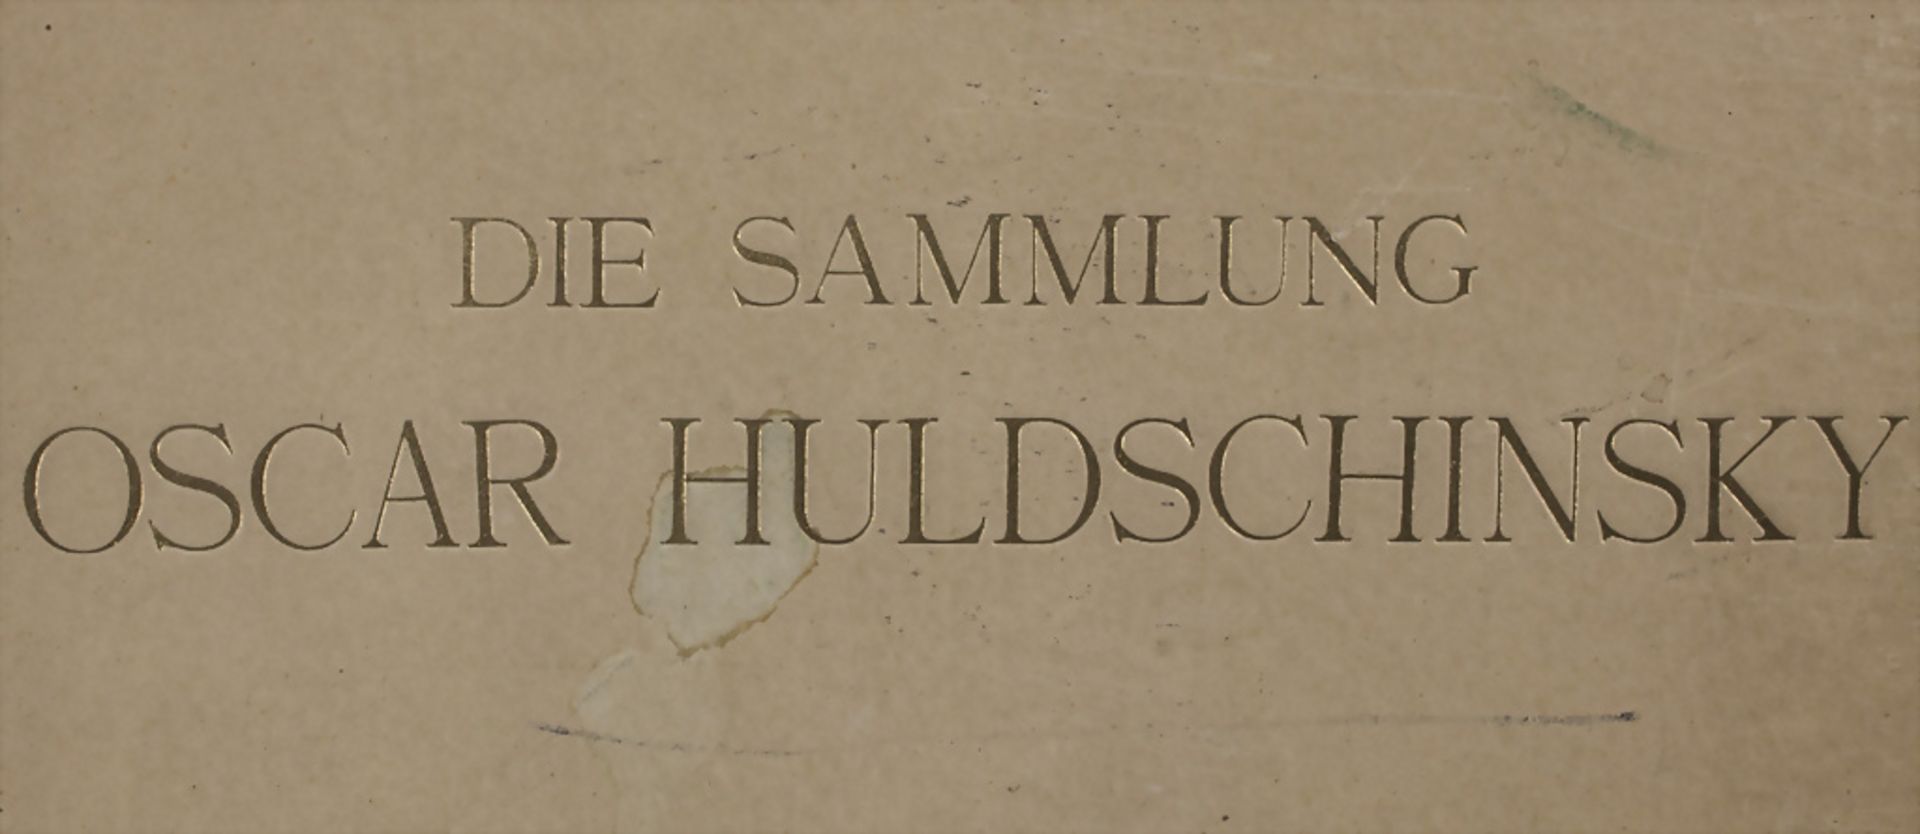 Wilhelm von Bode: Die Sammlung Oscar Huldschinsky, Berlin, 1928 - Image 3 of 31